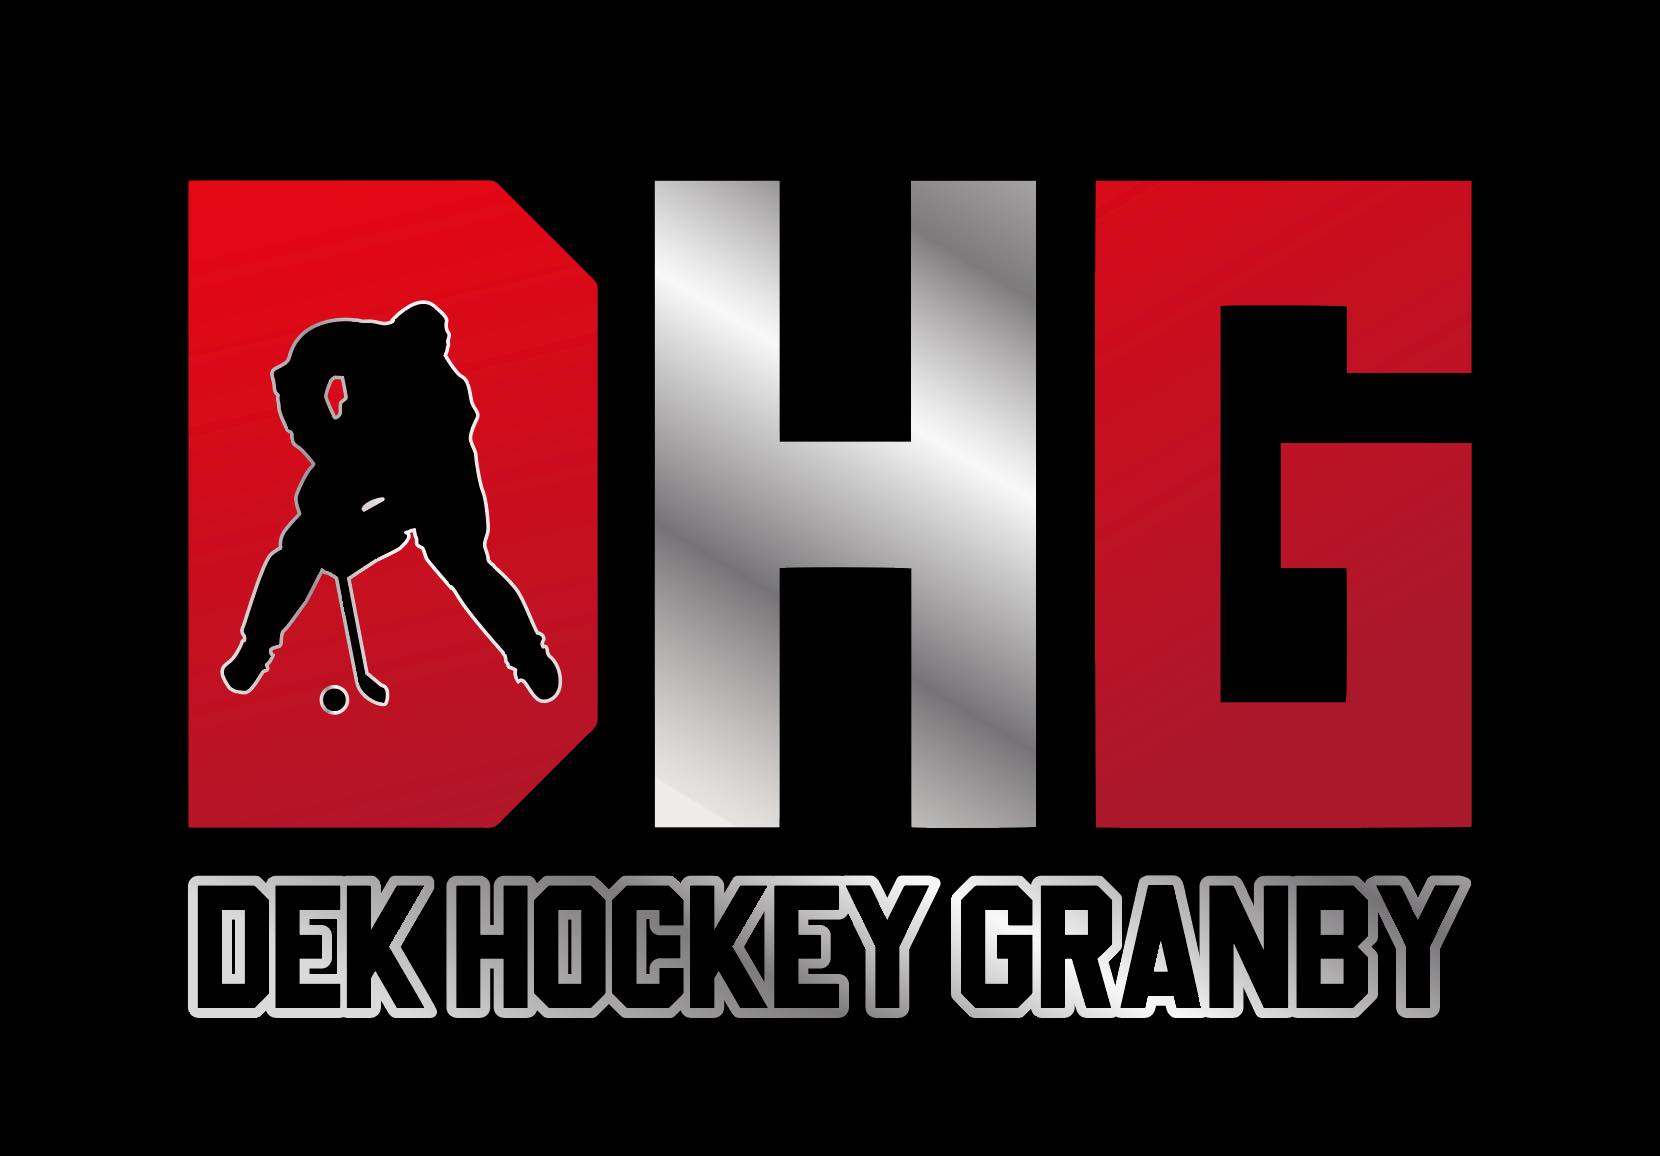 Dek Hockey Granby